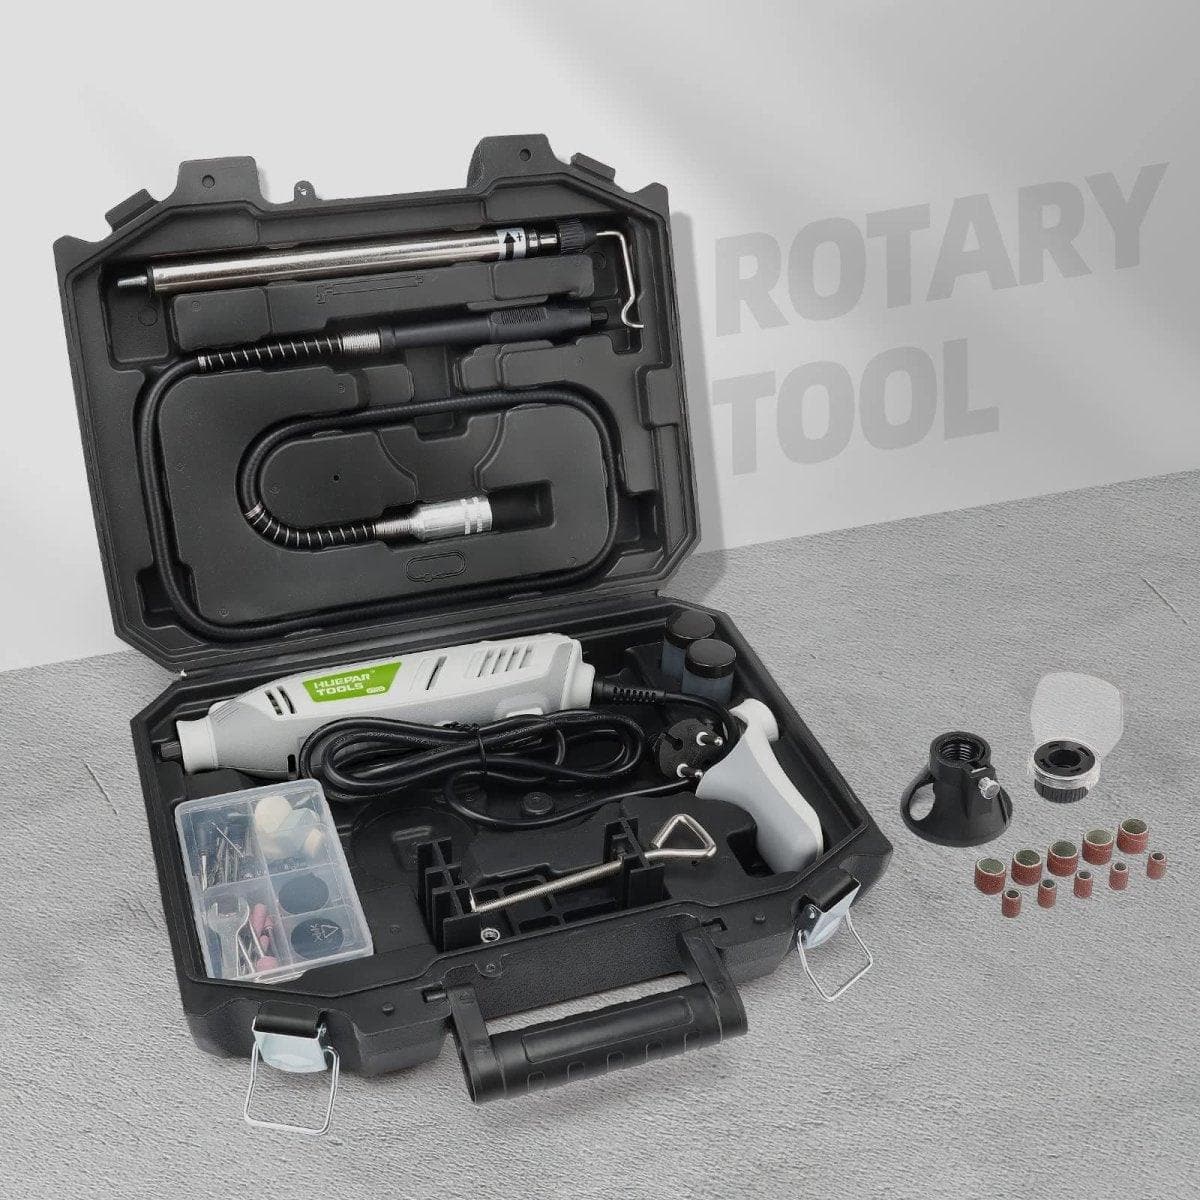 Huepar RT200 - 200W Rotary Tool Kit - HUEPAR US